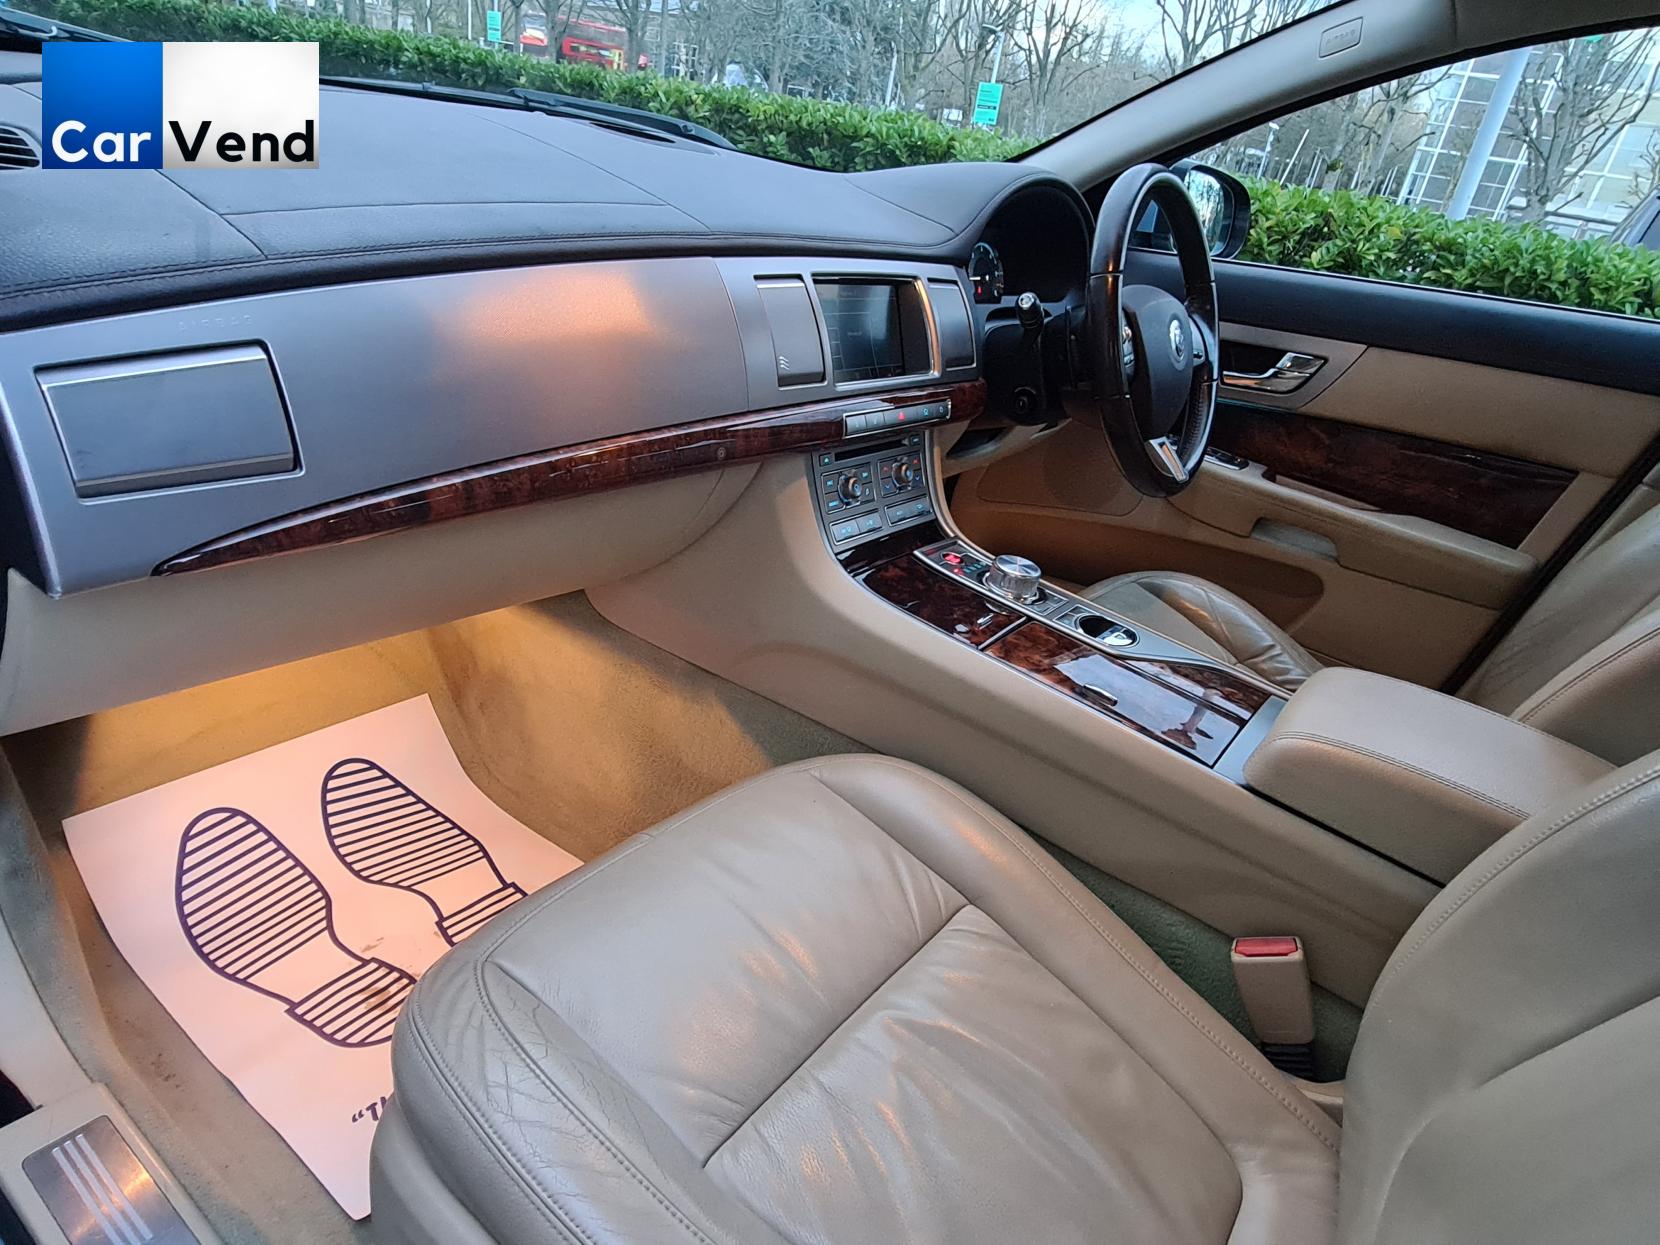 Jaguar XF 3.0d V6 Luxury Saloon 4dr Diesel Auto Euro 5 (240 ps)